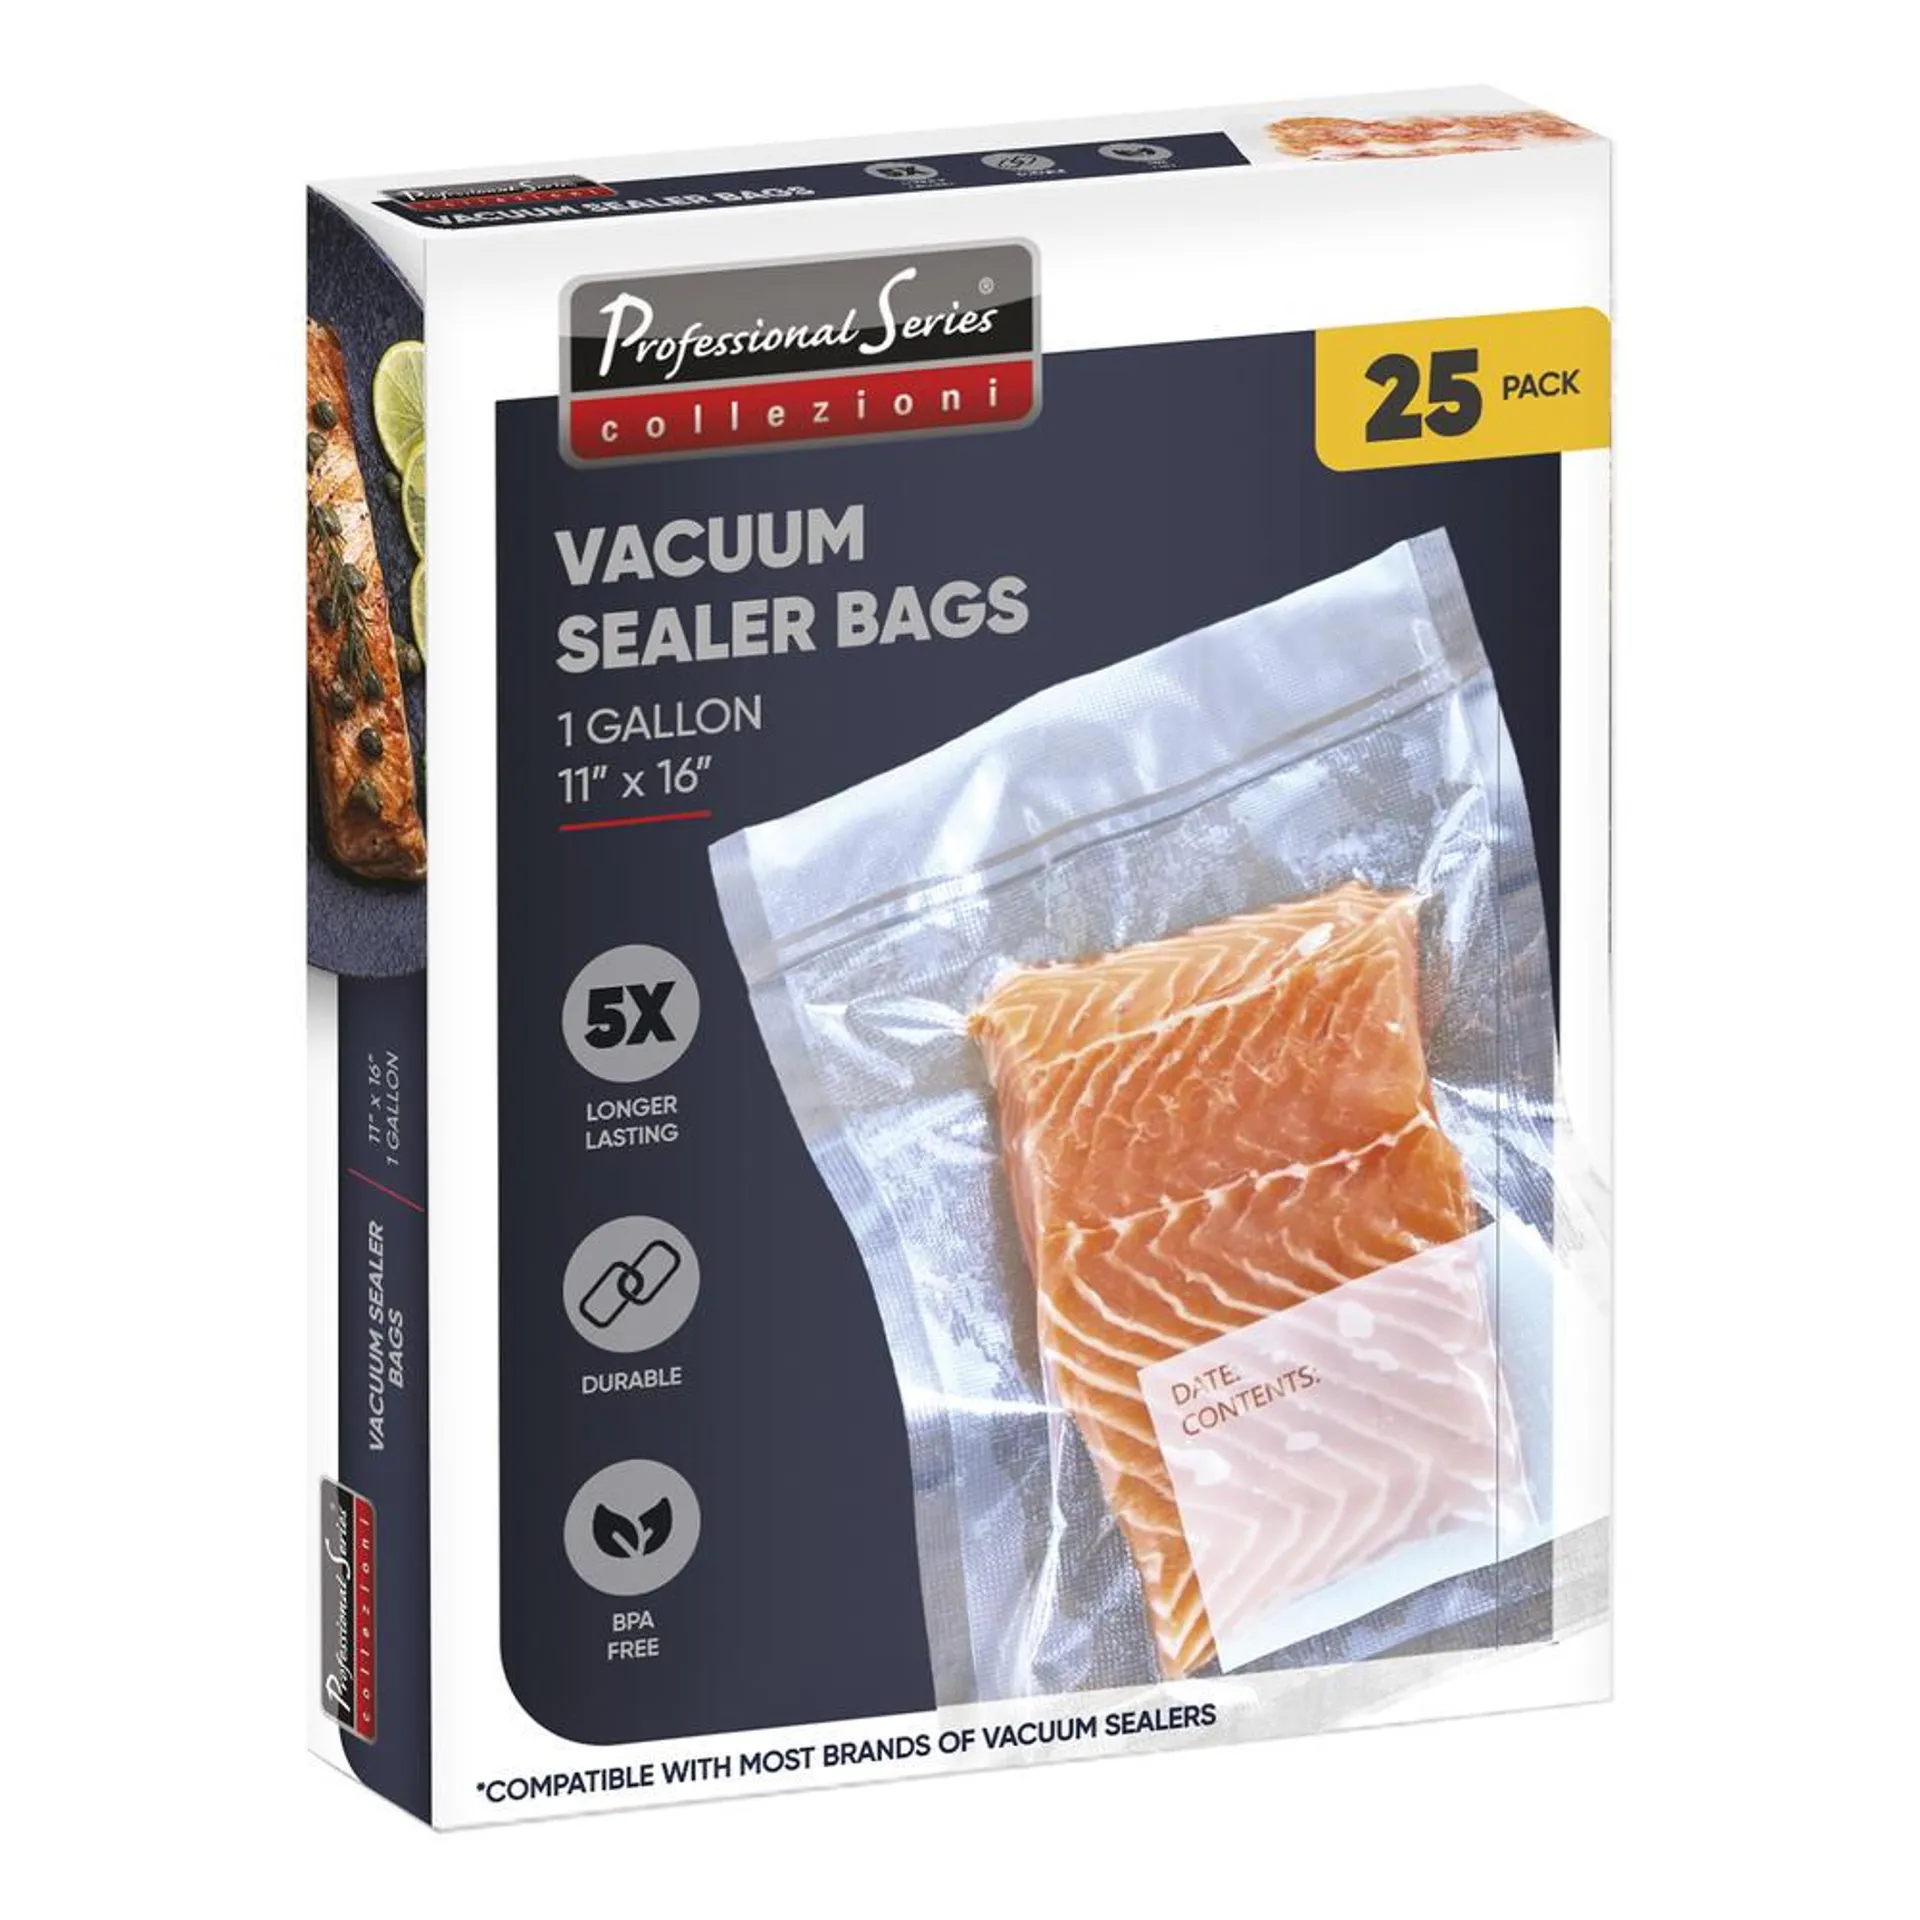 11" x 16" Gallon Vacuum Sealer Bags - 25 pack